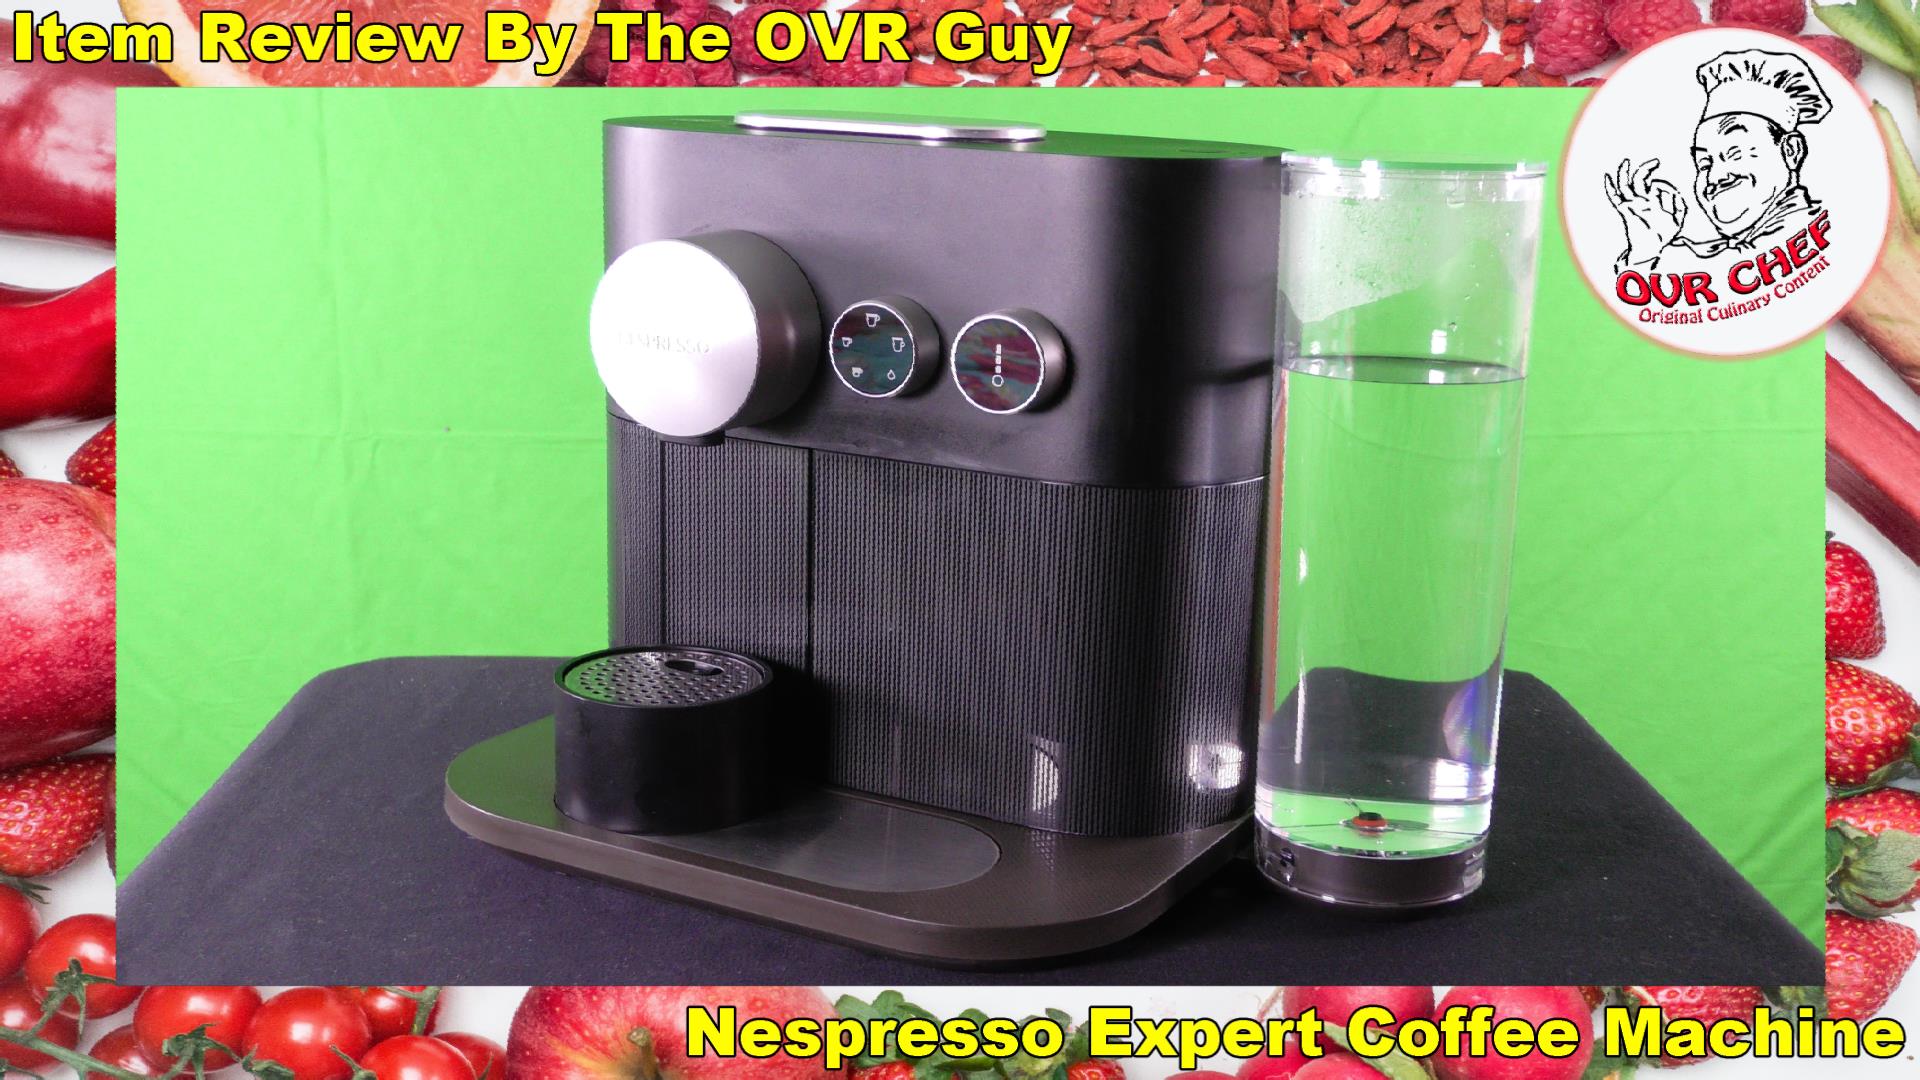 Nespresso Expert Coffee Machine (Review) - Original Video Reviews